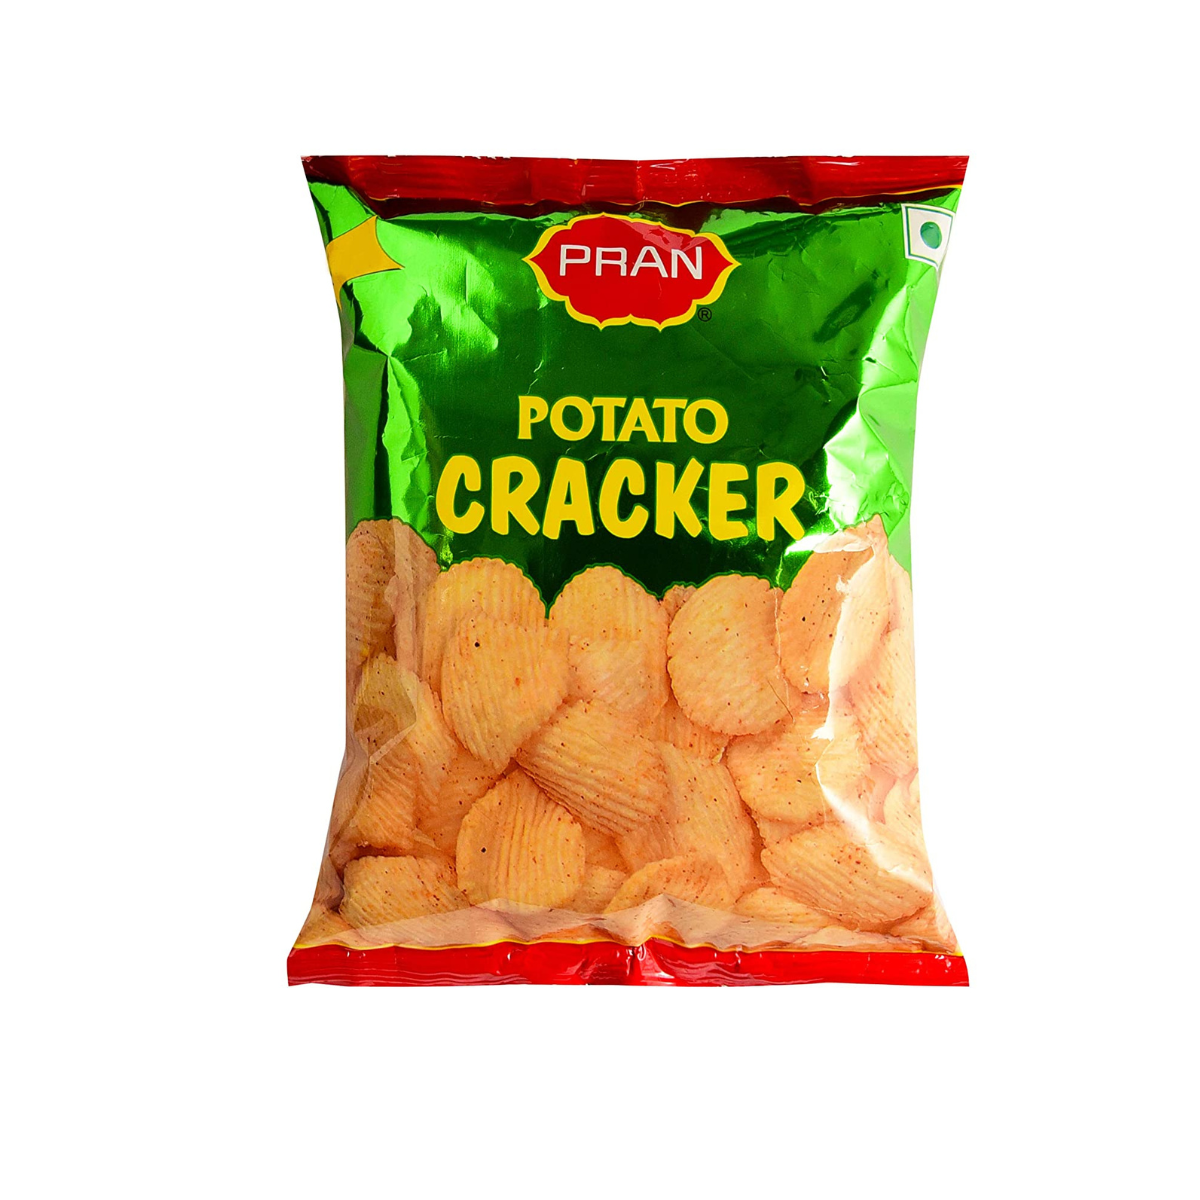 Pran Potato Cracker - 20g